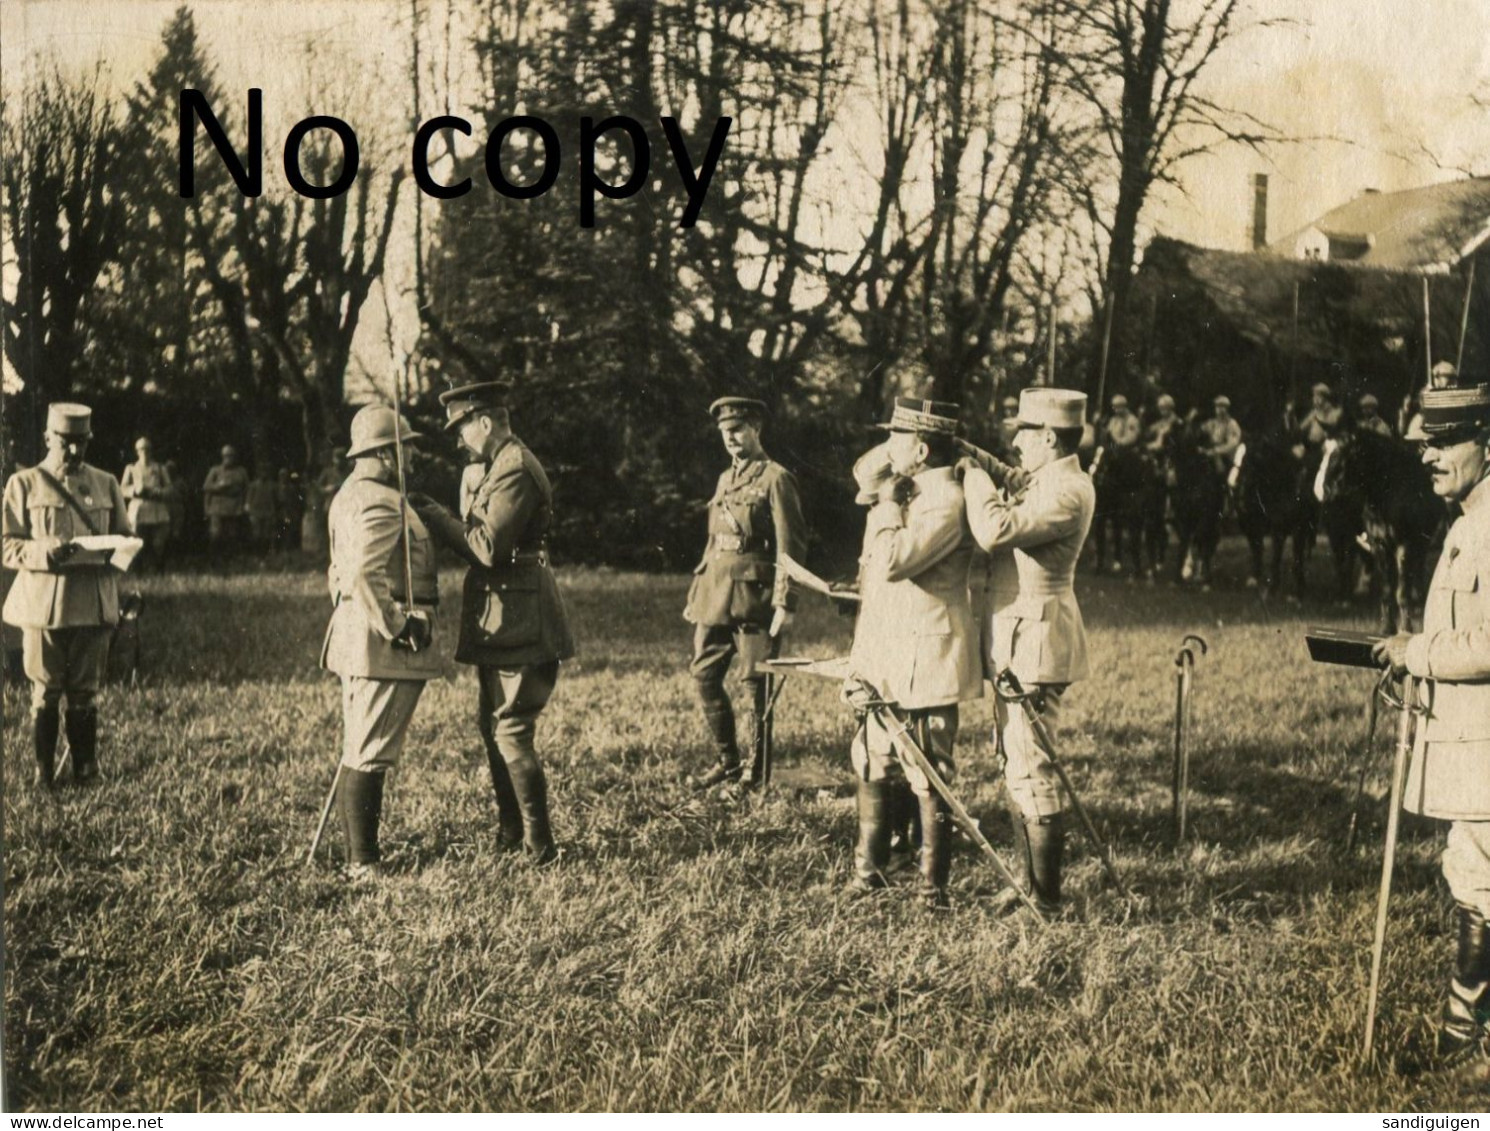 PHOTO FRANCAISE - OFFICIERS AU QG DE LA 5e ARMEE A JONCHERY SUR VESLE PRES DE TINQUEUX - REIMS MARNE GUERRE 1914 1918 - Guerre, Militaire